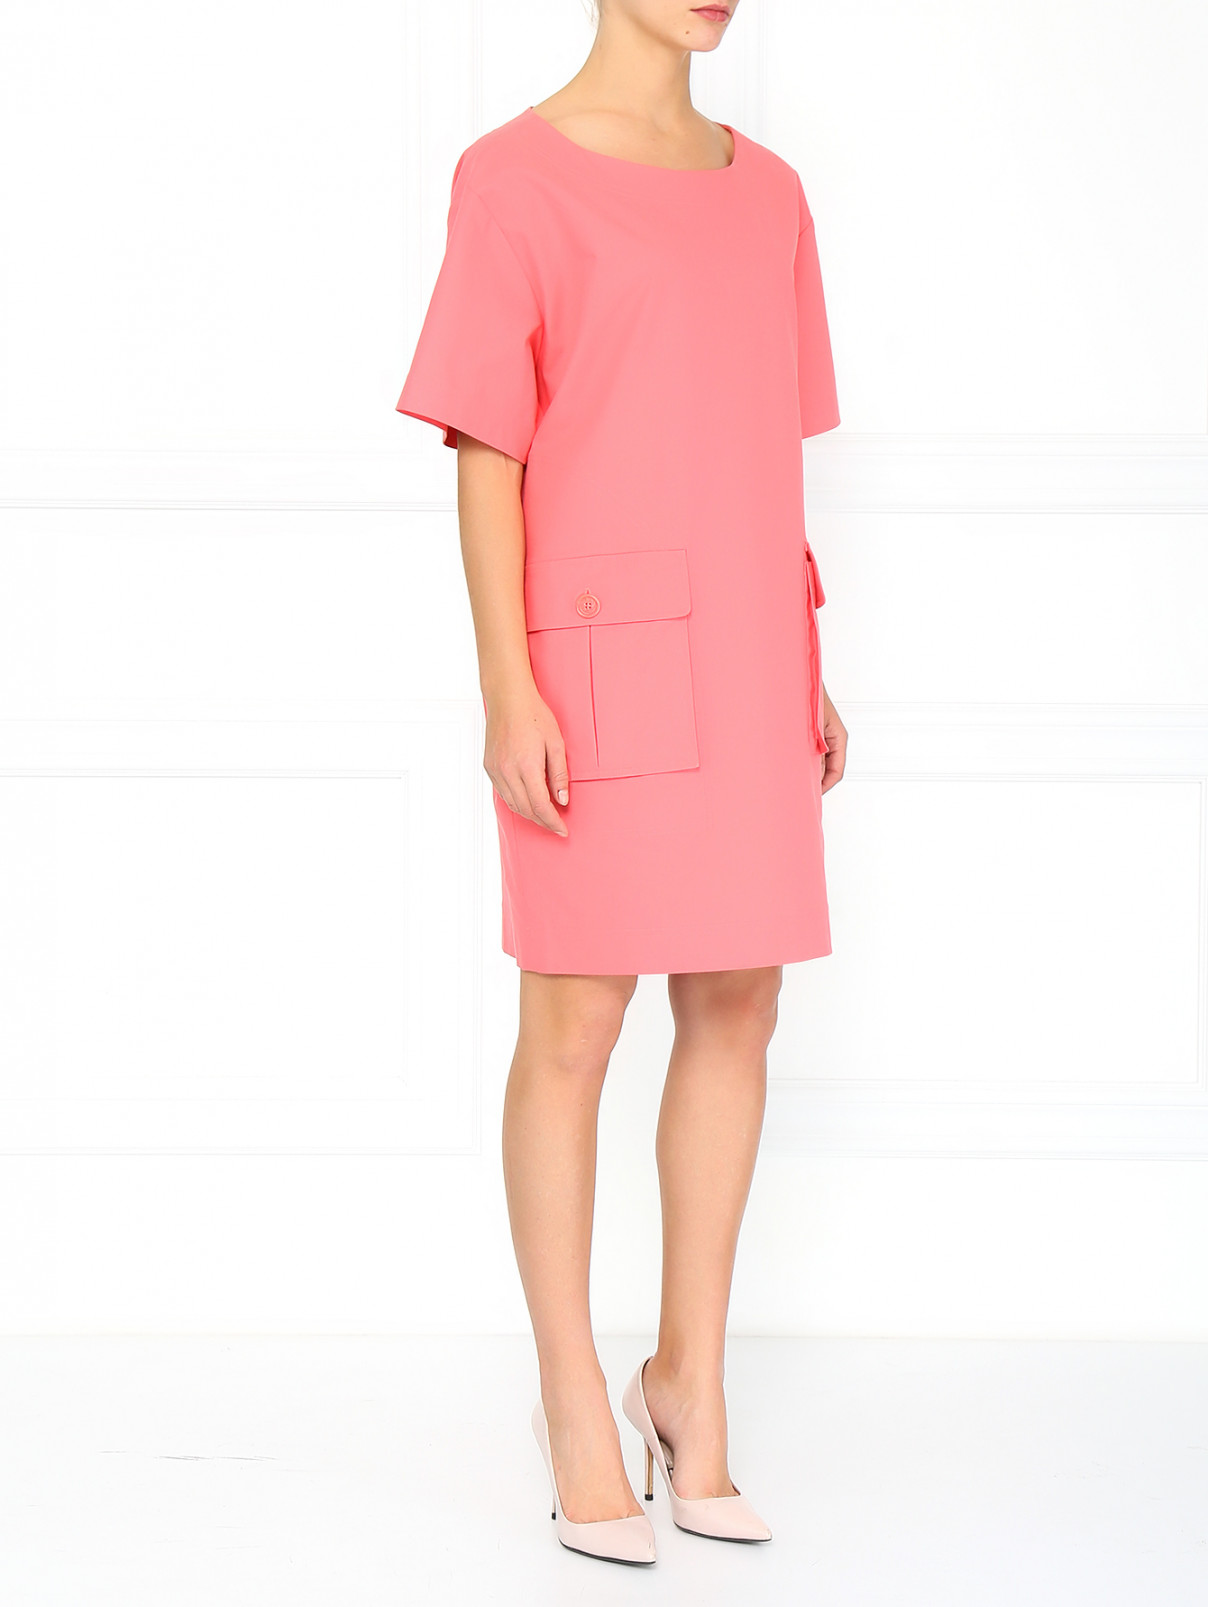 Хлопковое платье с накладными карманами Moschino  –  Модель Общий вид  – Цвет:  Красный